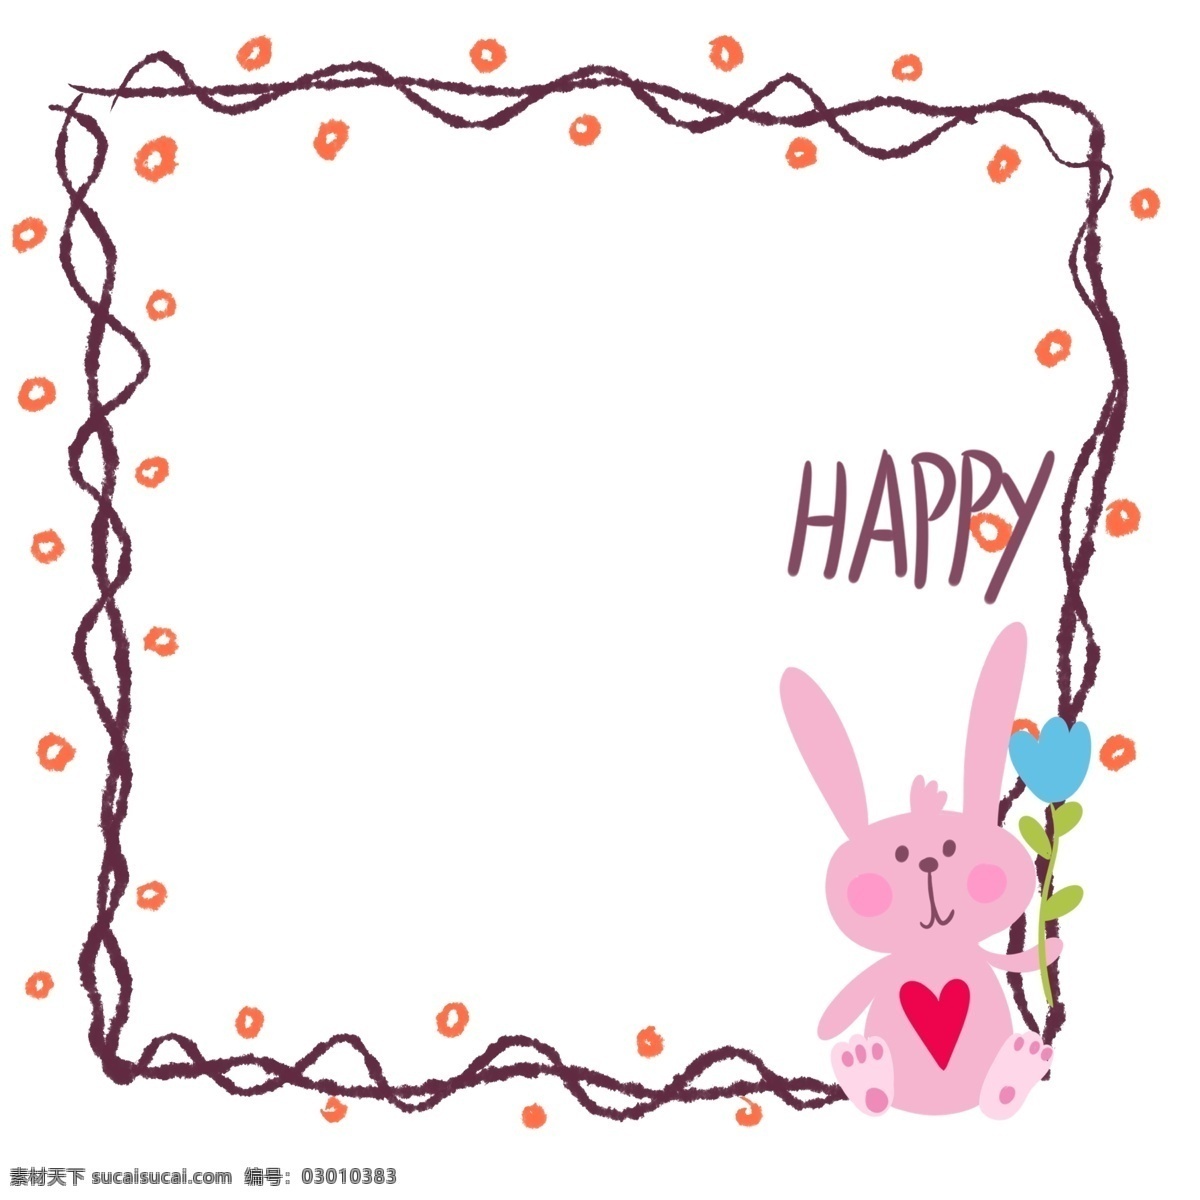 可爱 兔子 边框 插画 兔子边框 粉色兔子边框 可爱边框 小红心 快乐 兔子边框插图 兔子边框插画